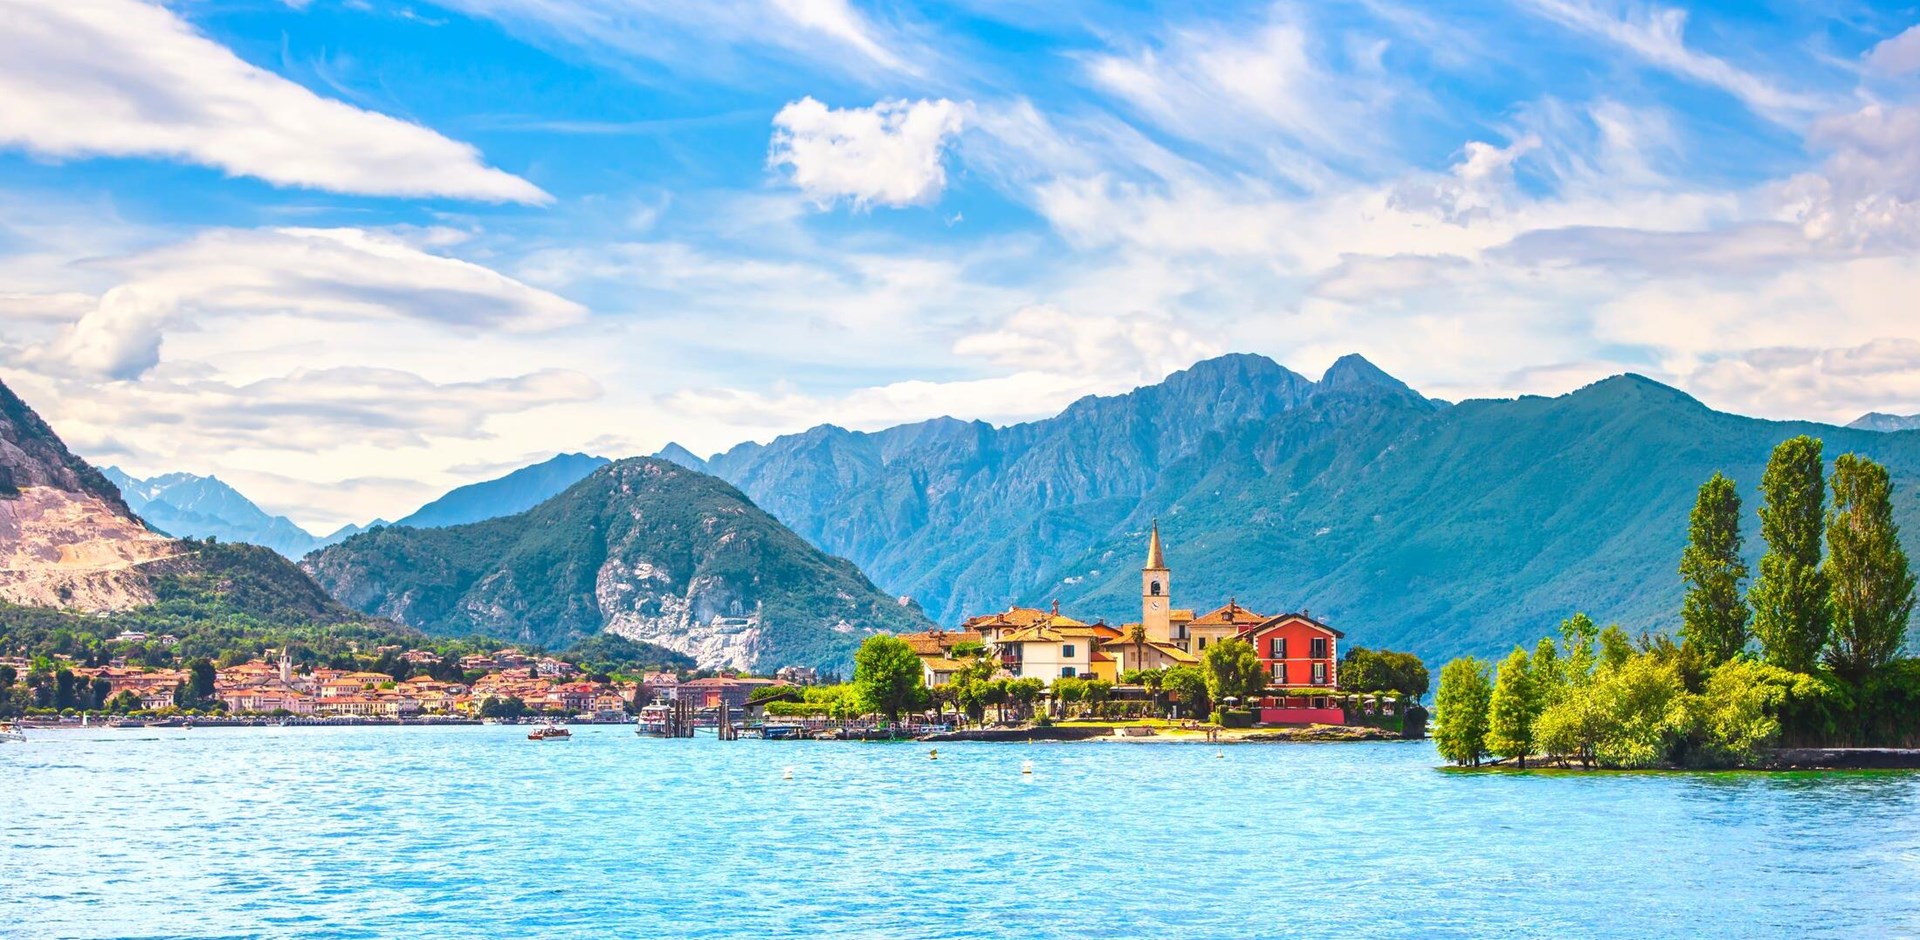 Isola dei Pescatori, fisherman island in Maggiore lake, Borromean Islands, Stresa Piedmont Italy, Europe.